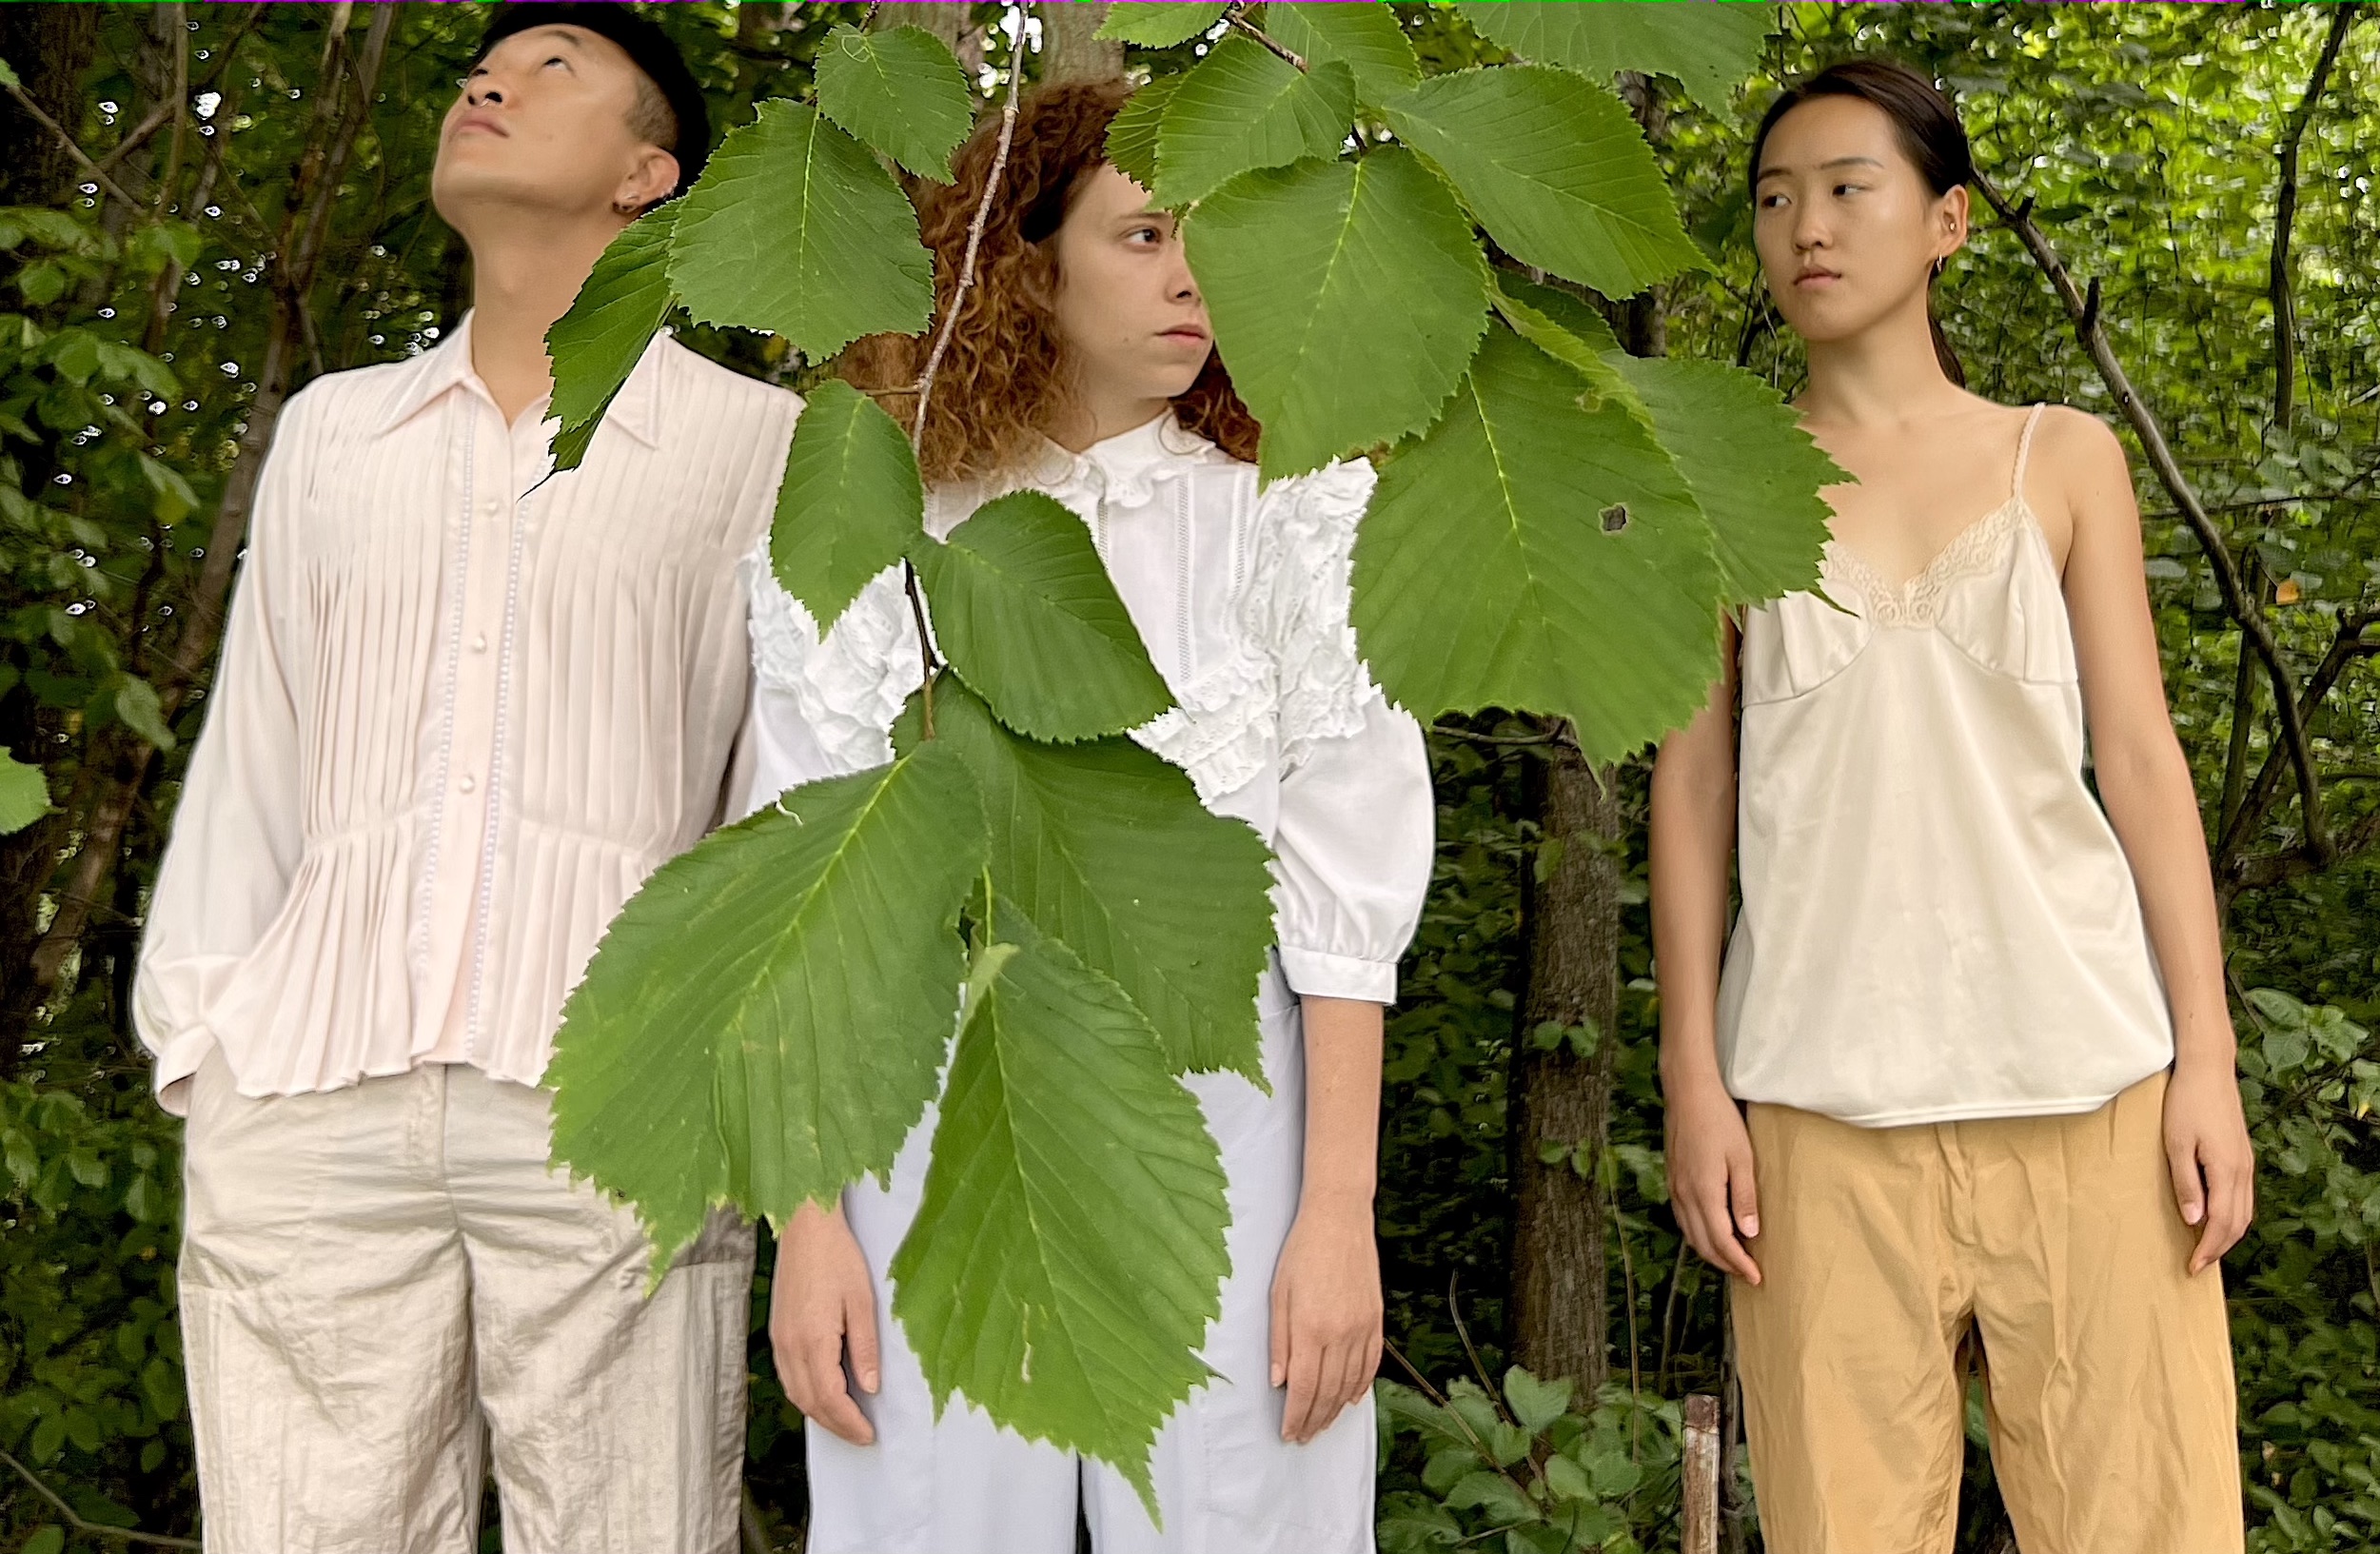 Drei Menschen stehen in einem grünen Dickicht, die Blätter eines Baumes bilden den Vordergrund.